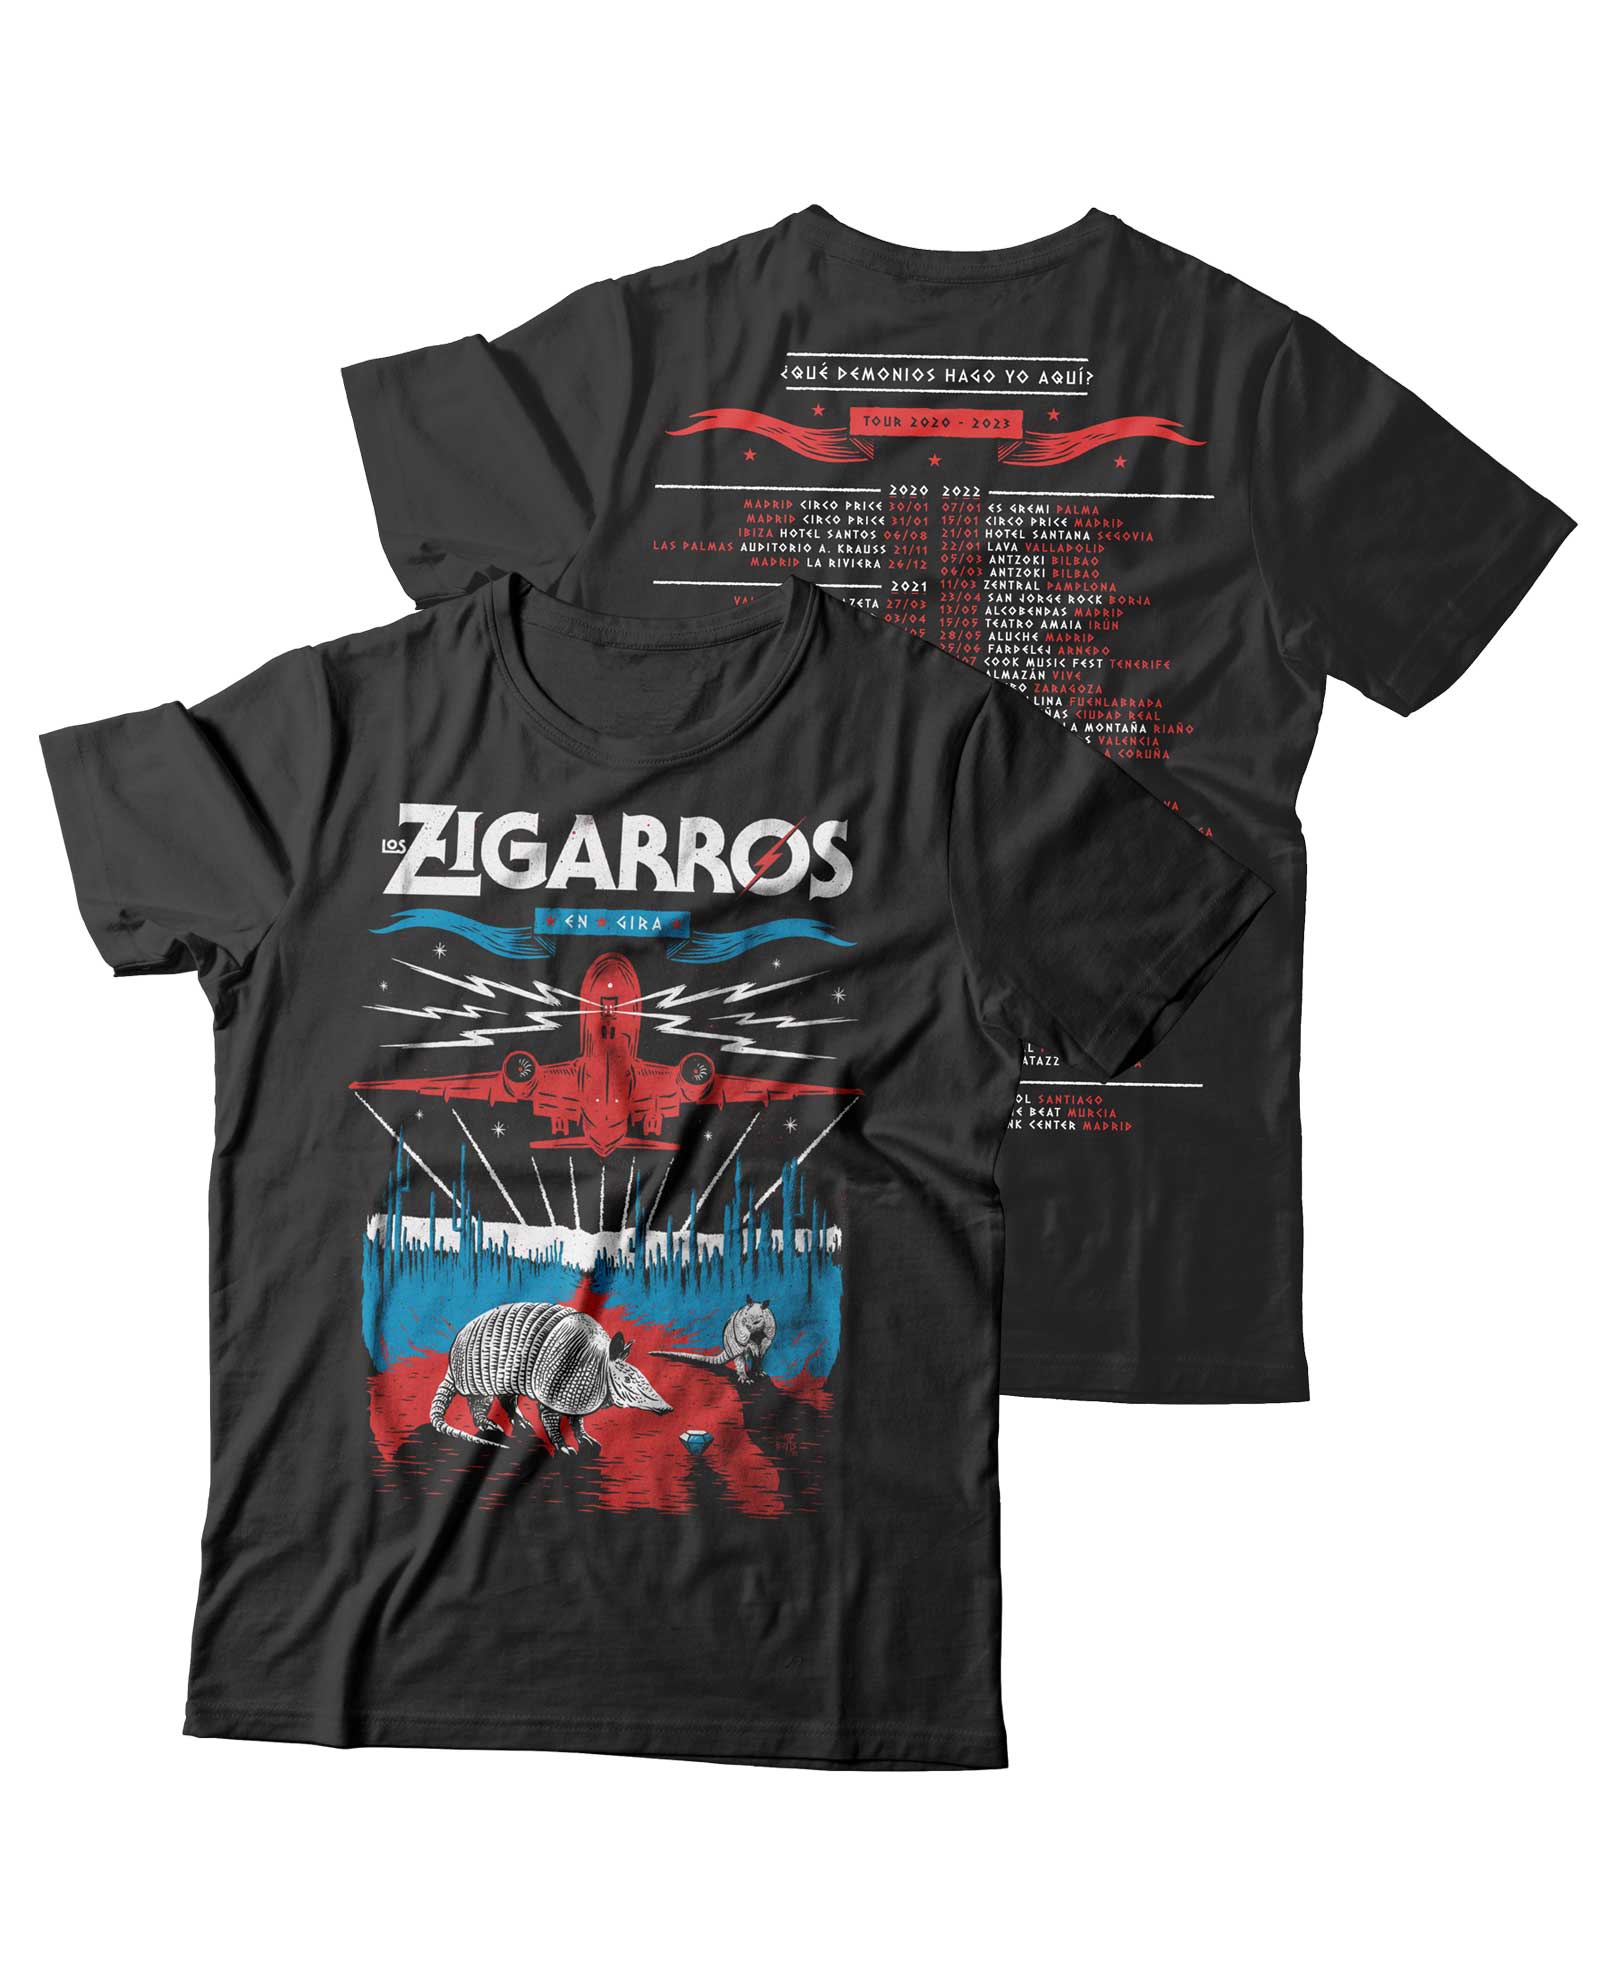 Camiseta "Fin de Gira ¿Qué demonios hago yo aquí" Negra Deslavada - Los Zigarros - Rocktud - Los Zigarros